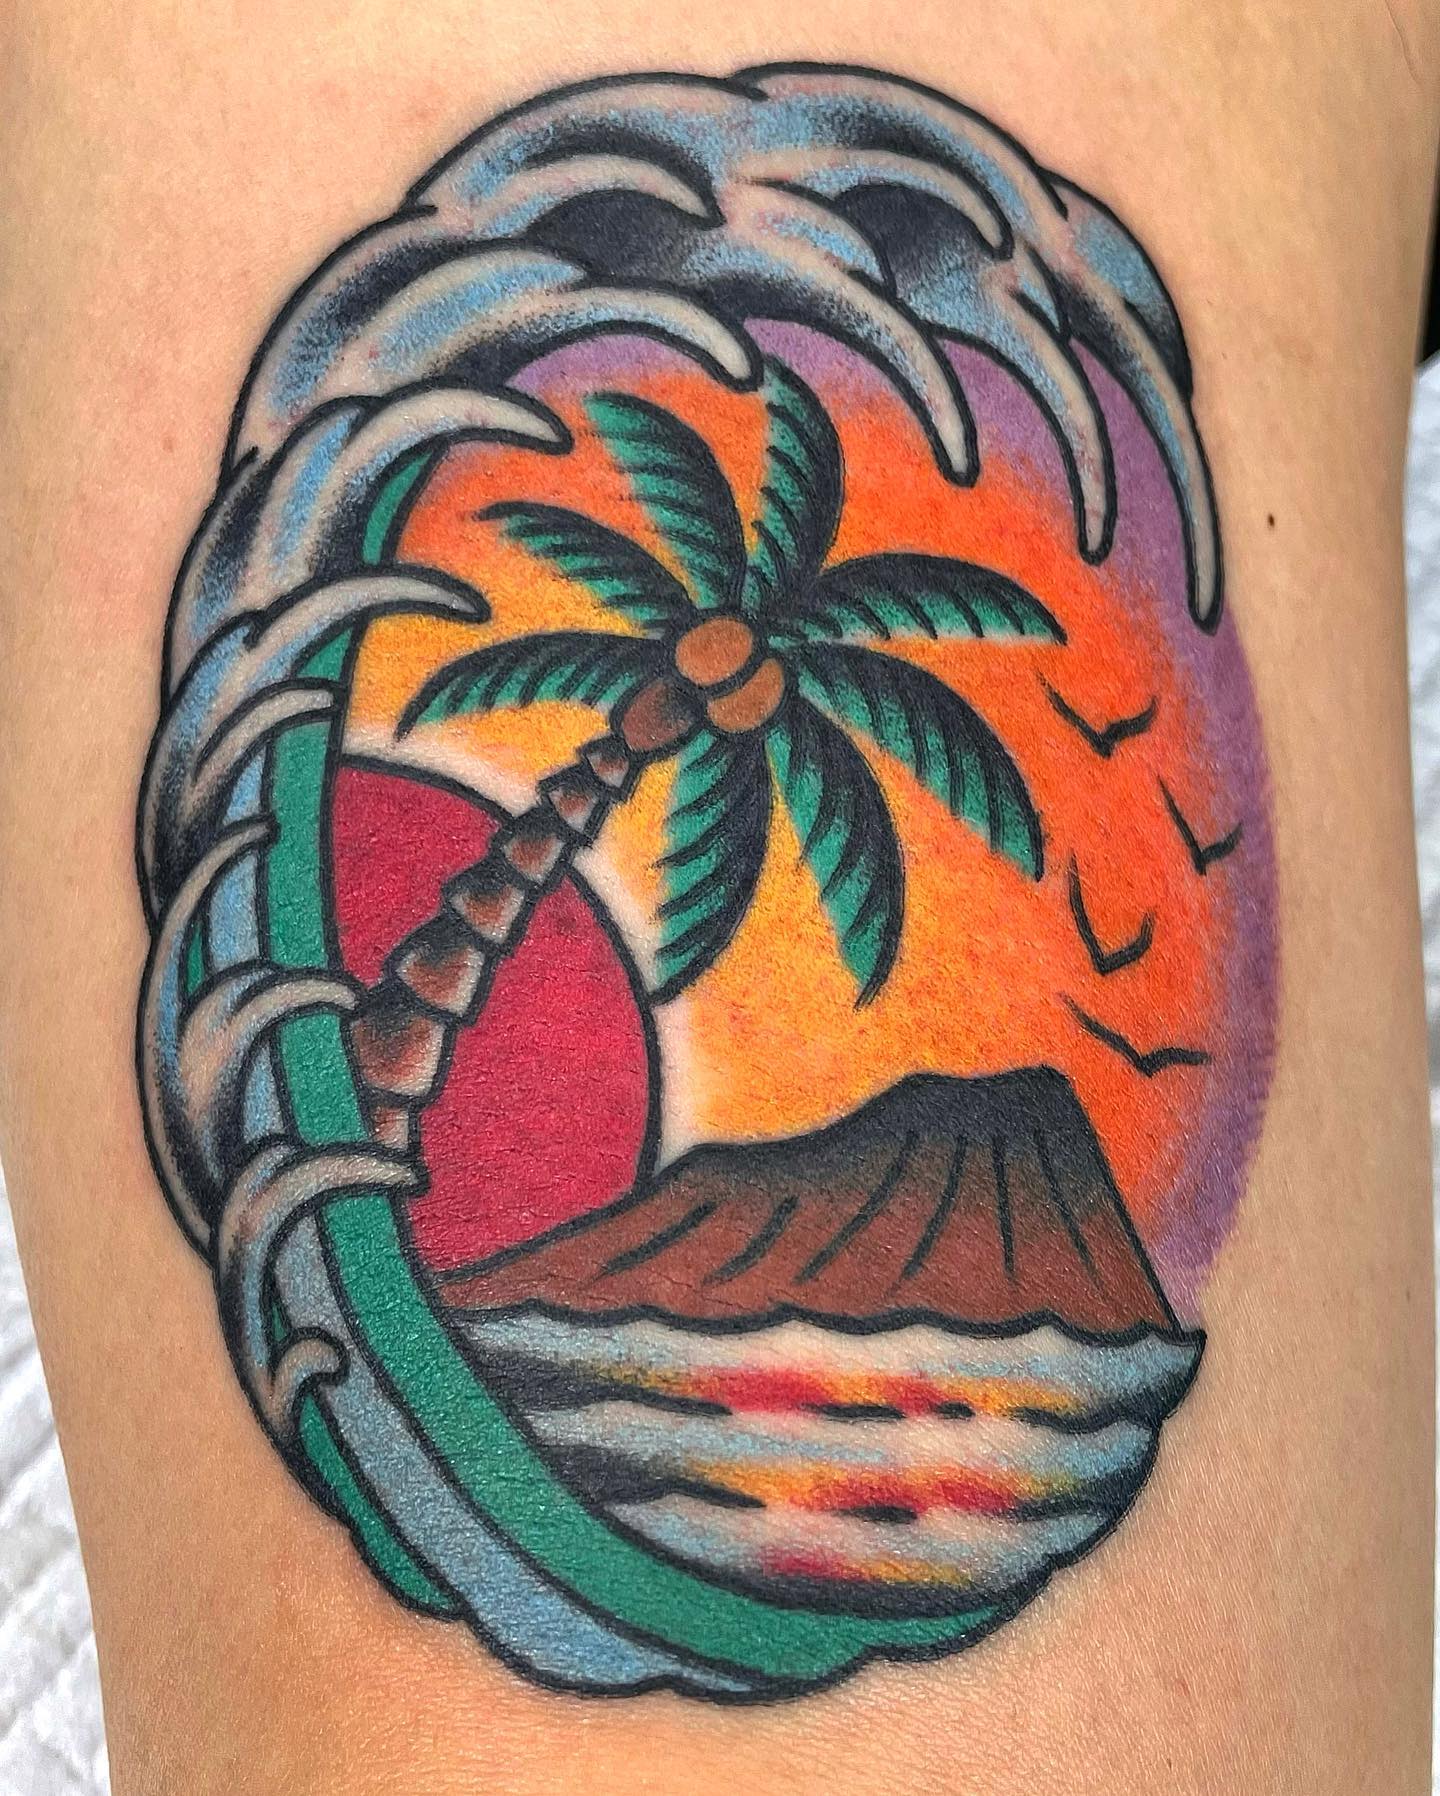 Tatuaje de olas y palmera